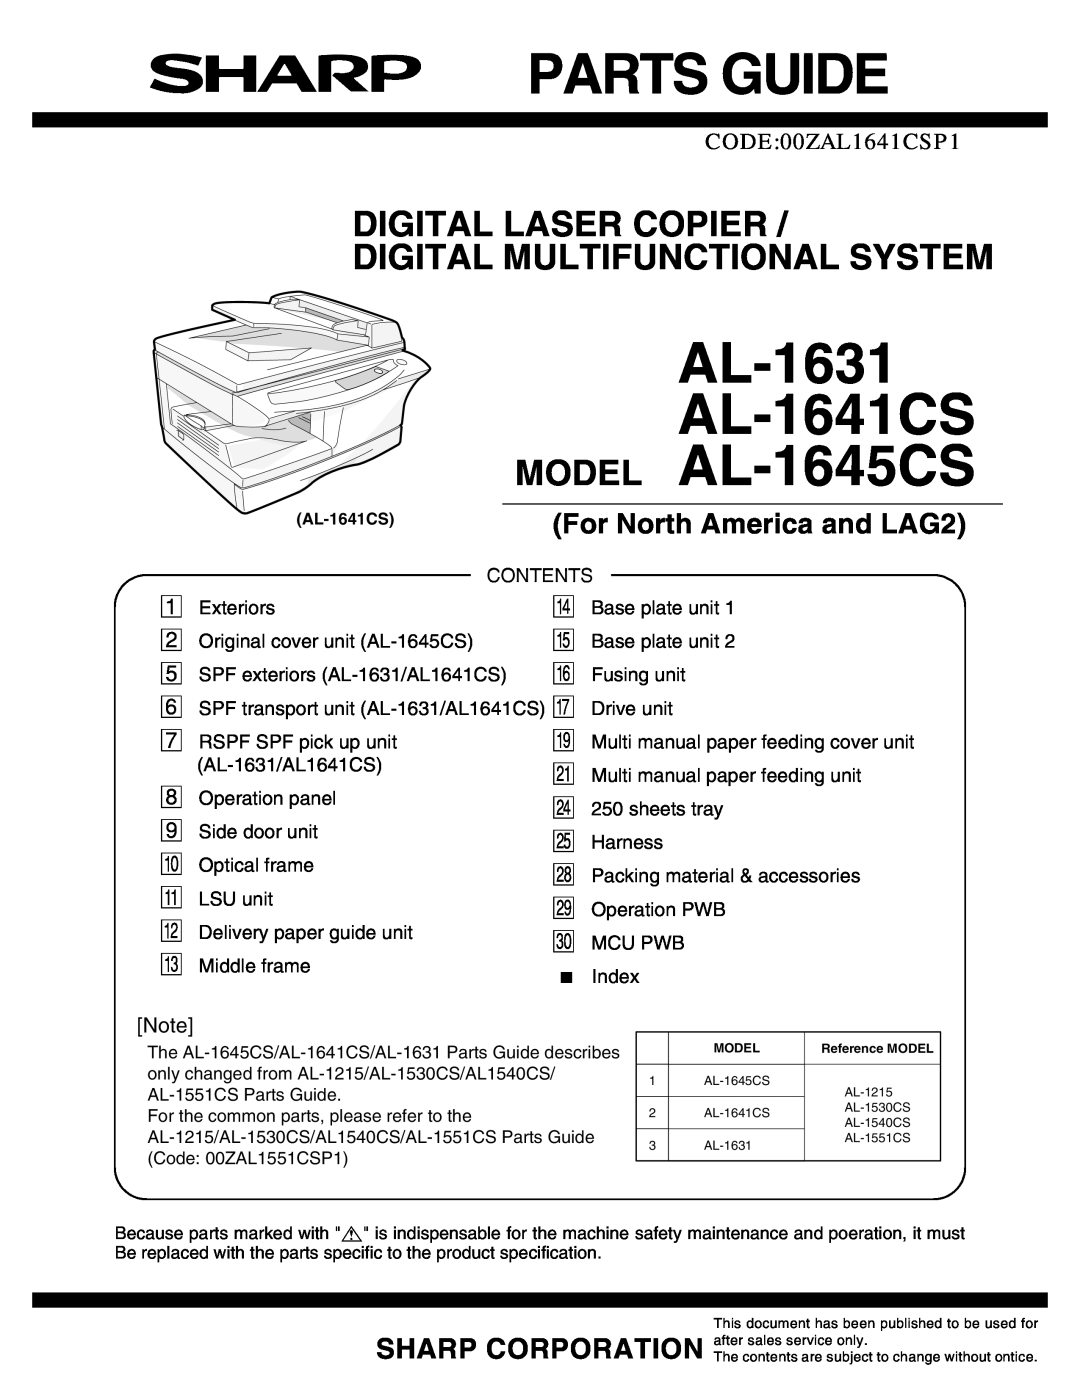 Sharp service manual q PARTS GUIDE, For North America and LAG2, AL-1631 AL-1641CS MODEL AL-1645CS, CODE00ZAL1641CSP1 